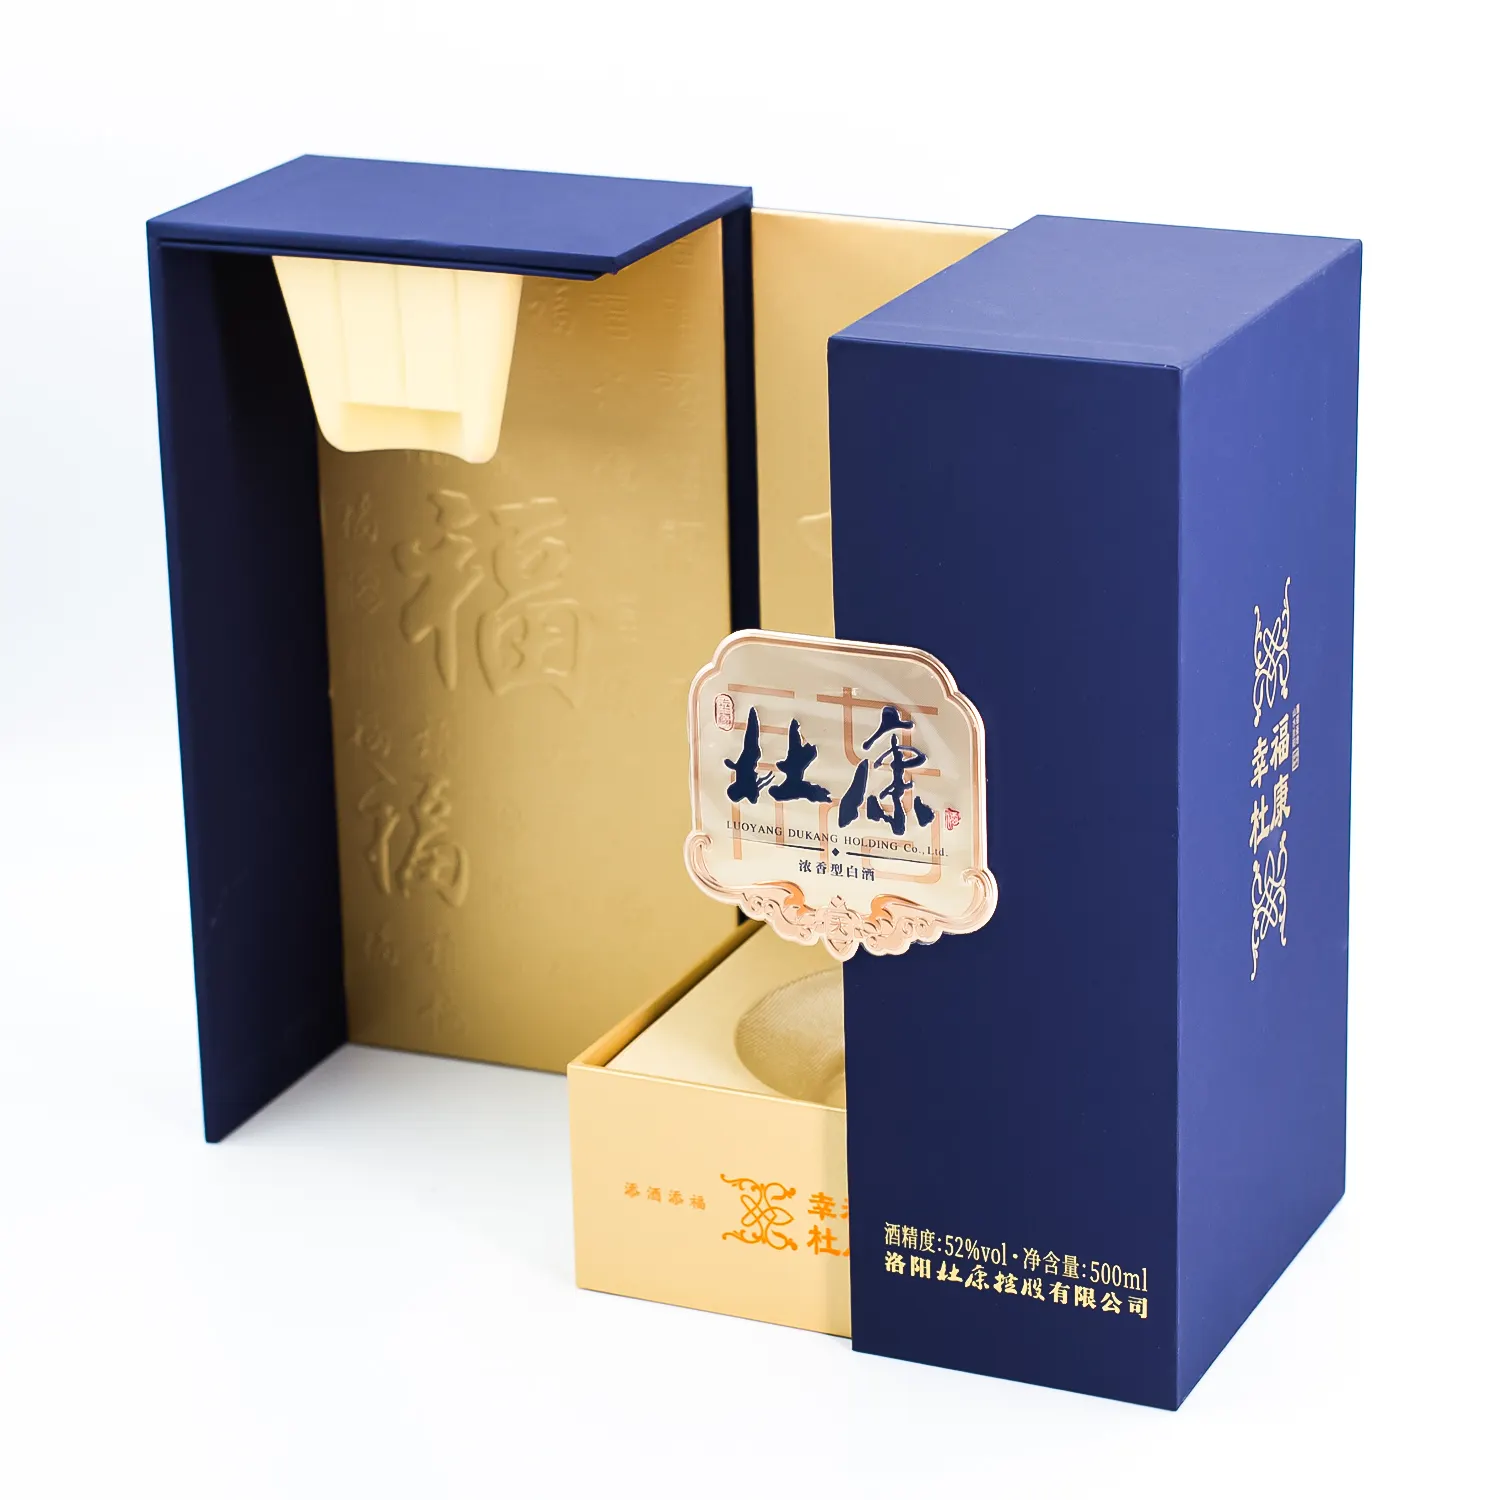 Benutzer definierte Luxus Whisky Wein Brandy Alkohol Verpackung Designed Magnetic Flap Wein Parfüm Köln Geschenk box